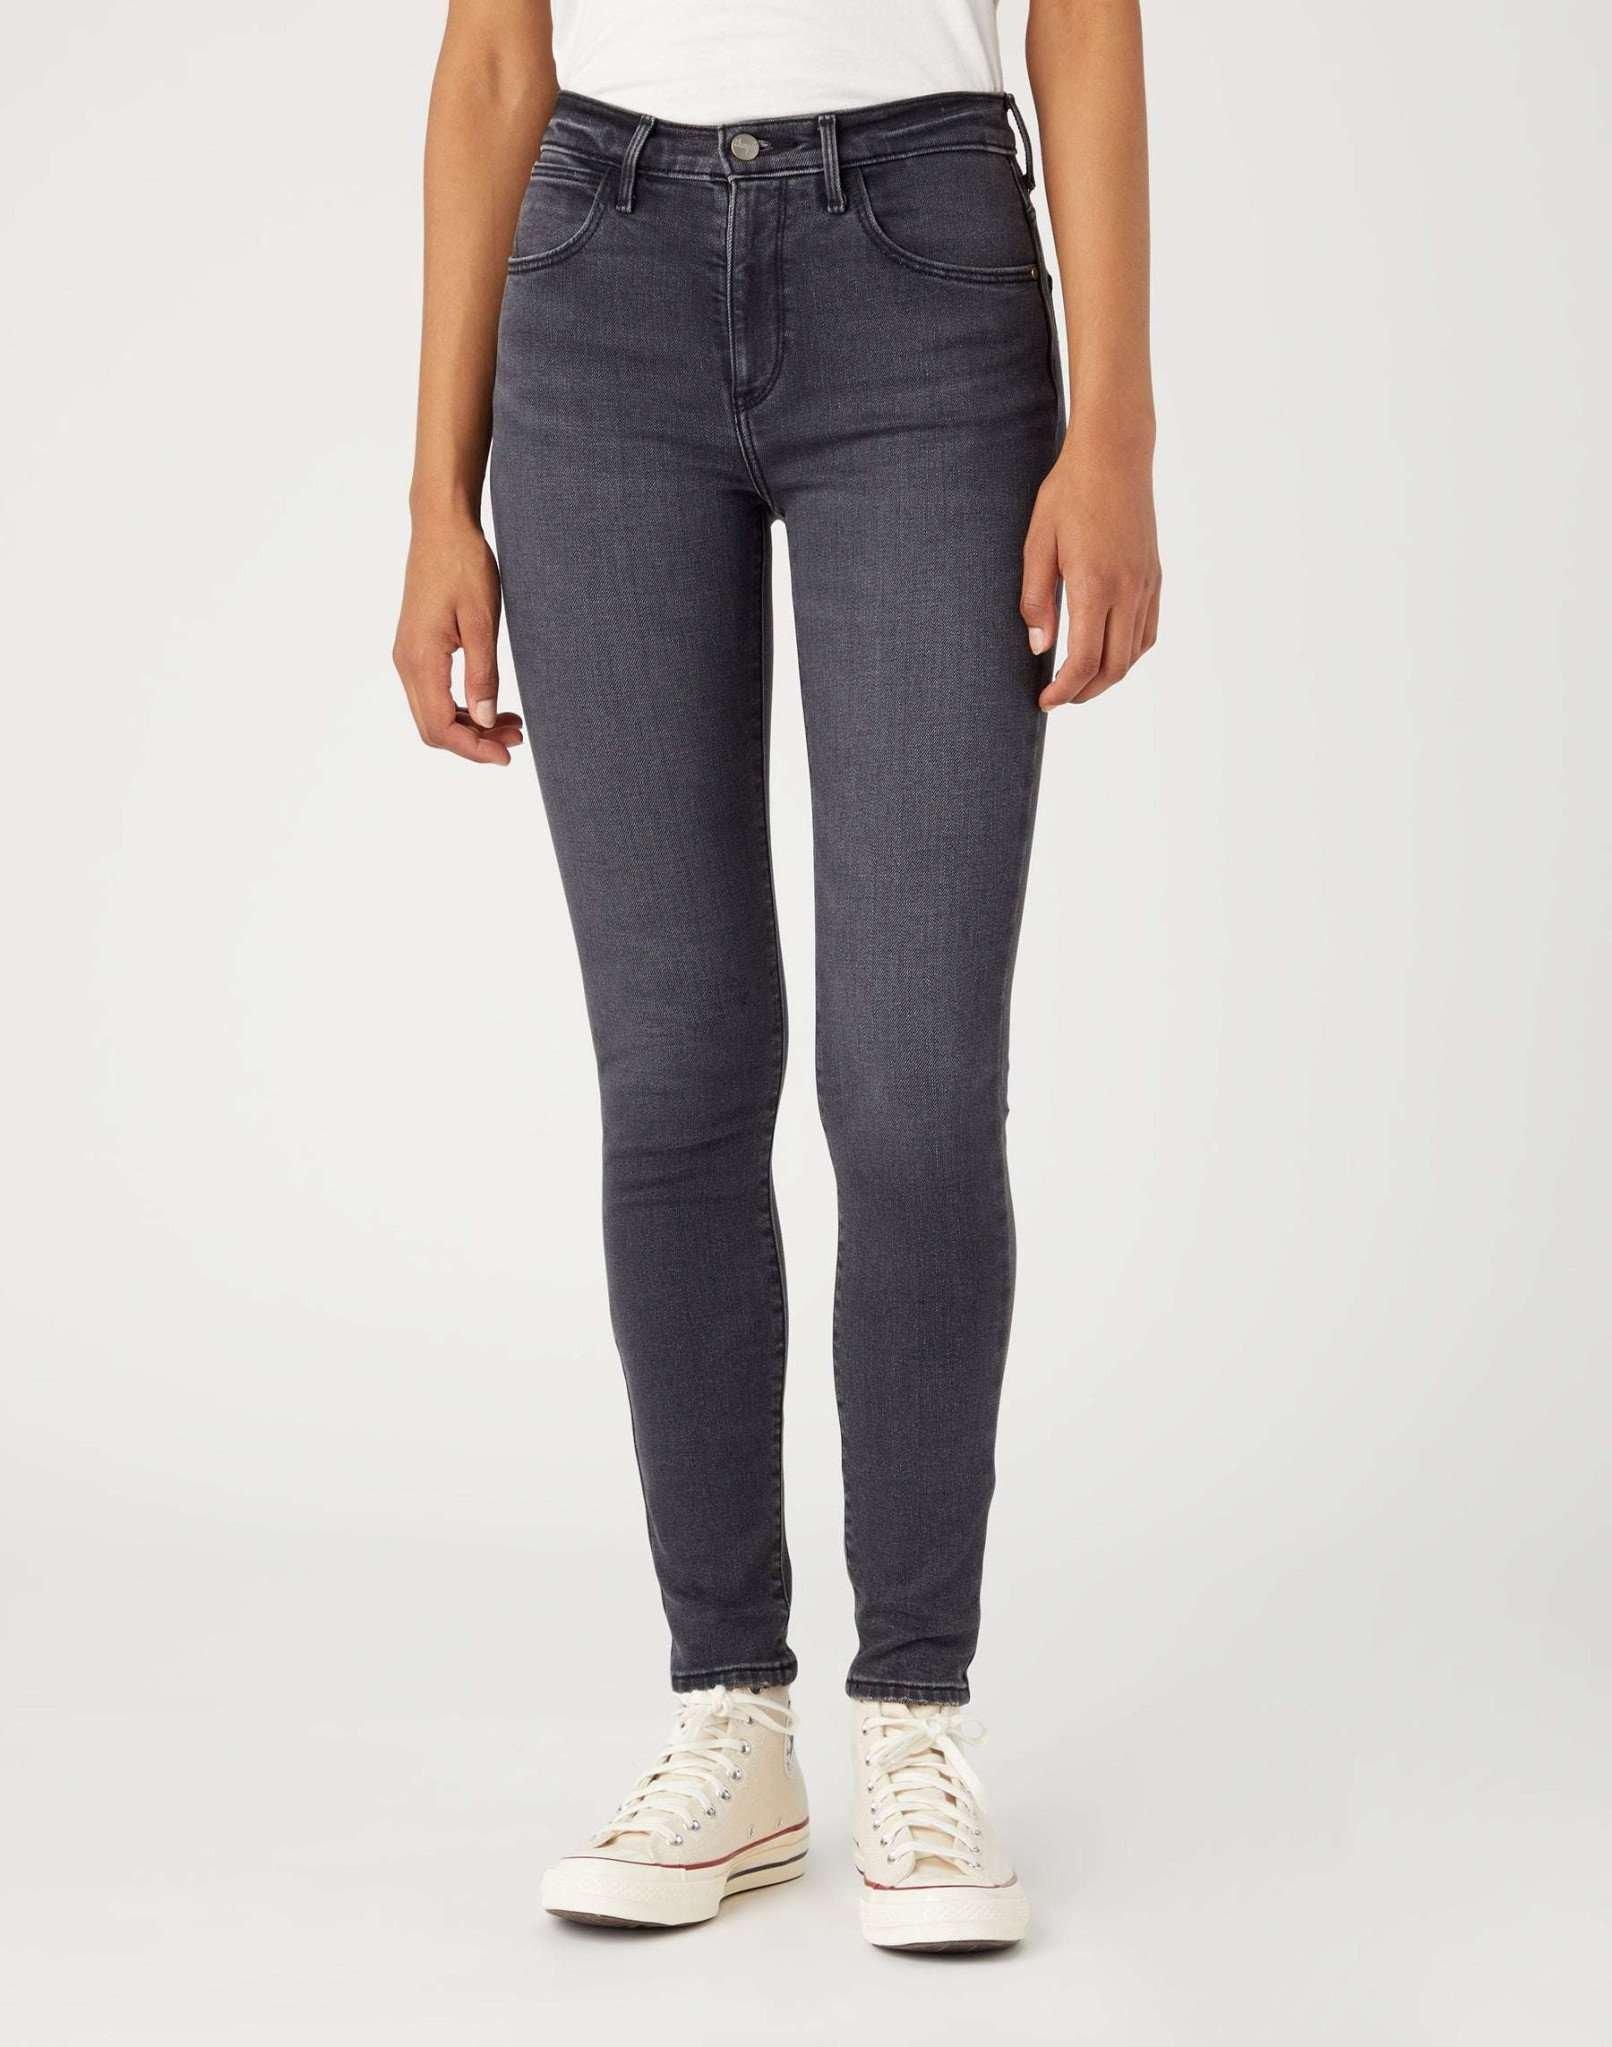 Jeans Skinny Fit High Skinny Damen Schwarz L32/W29 von Wrangler